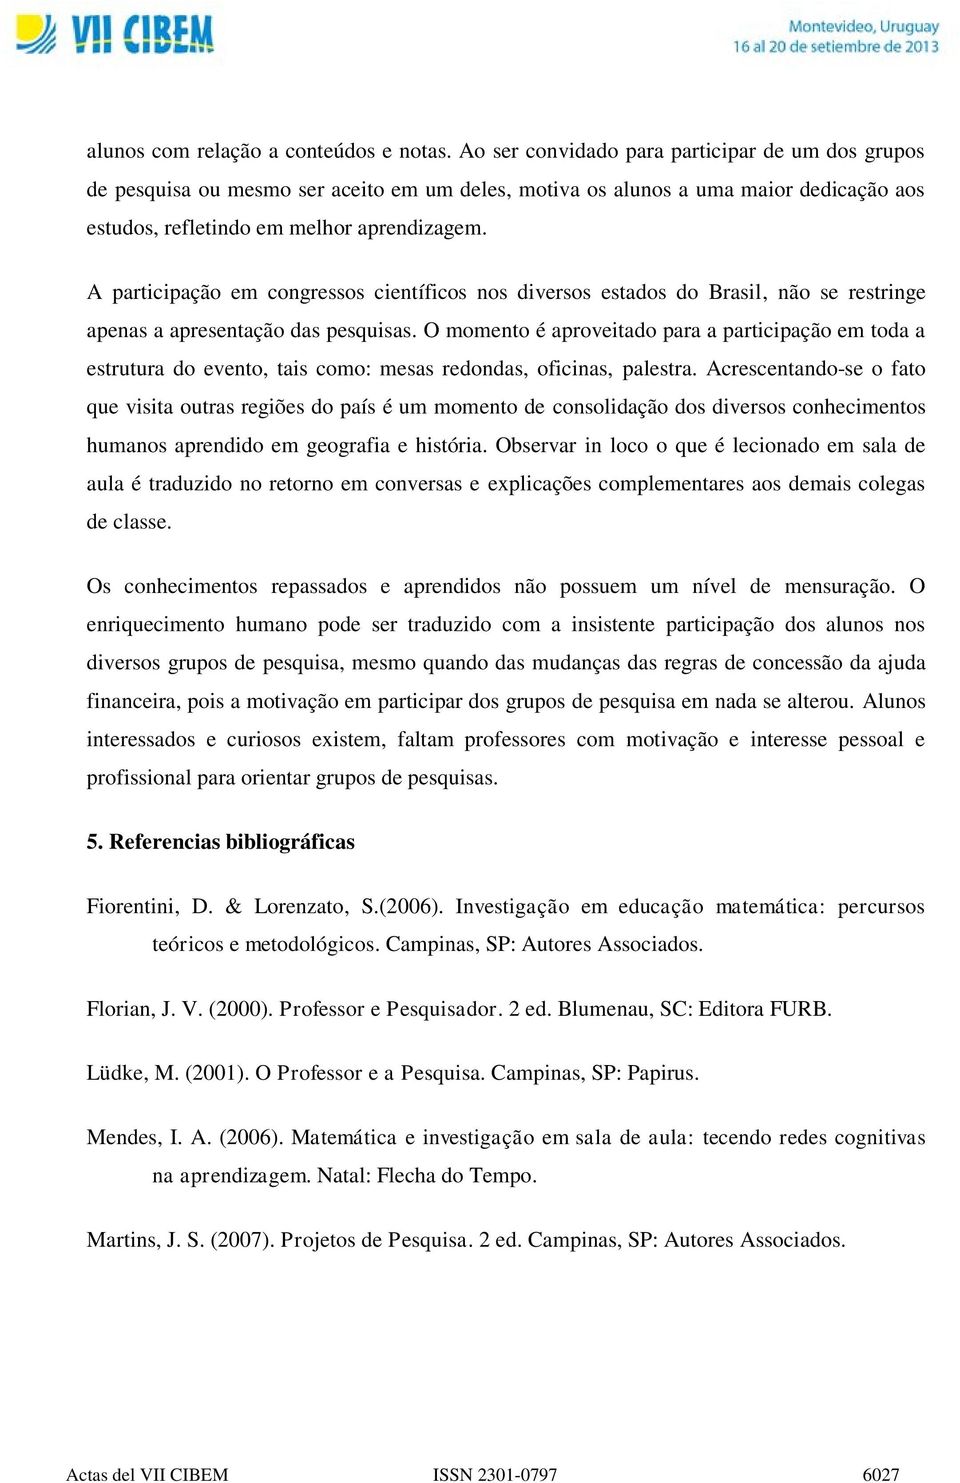 A participação em congressos científicos nos diversos estados do Brasil, não se restringe apenas a apresentação das pesquisas.